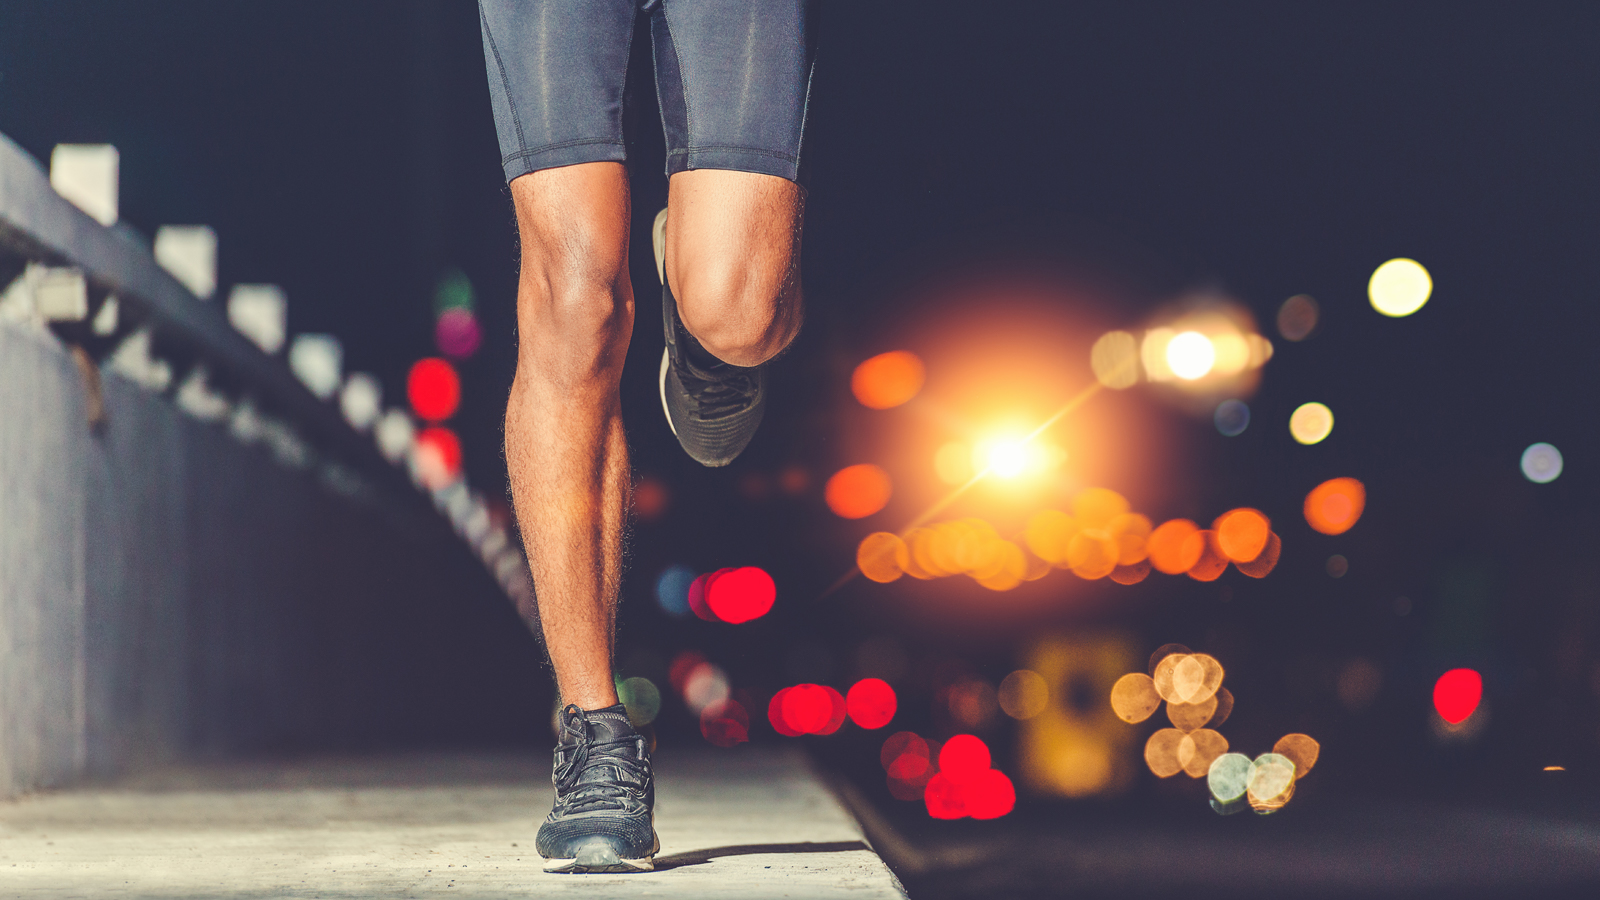 Chạy bộ buổi sáng, trưa hay tối mới thực sự giúp bạn tái tạo năng lượng, đốt calo và giảm cân nặng như ý. Mỗi thời điểm trong ngày lại có những ưu - nhược cần phải cân nhắc trước khi đưa ra quyết định.